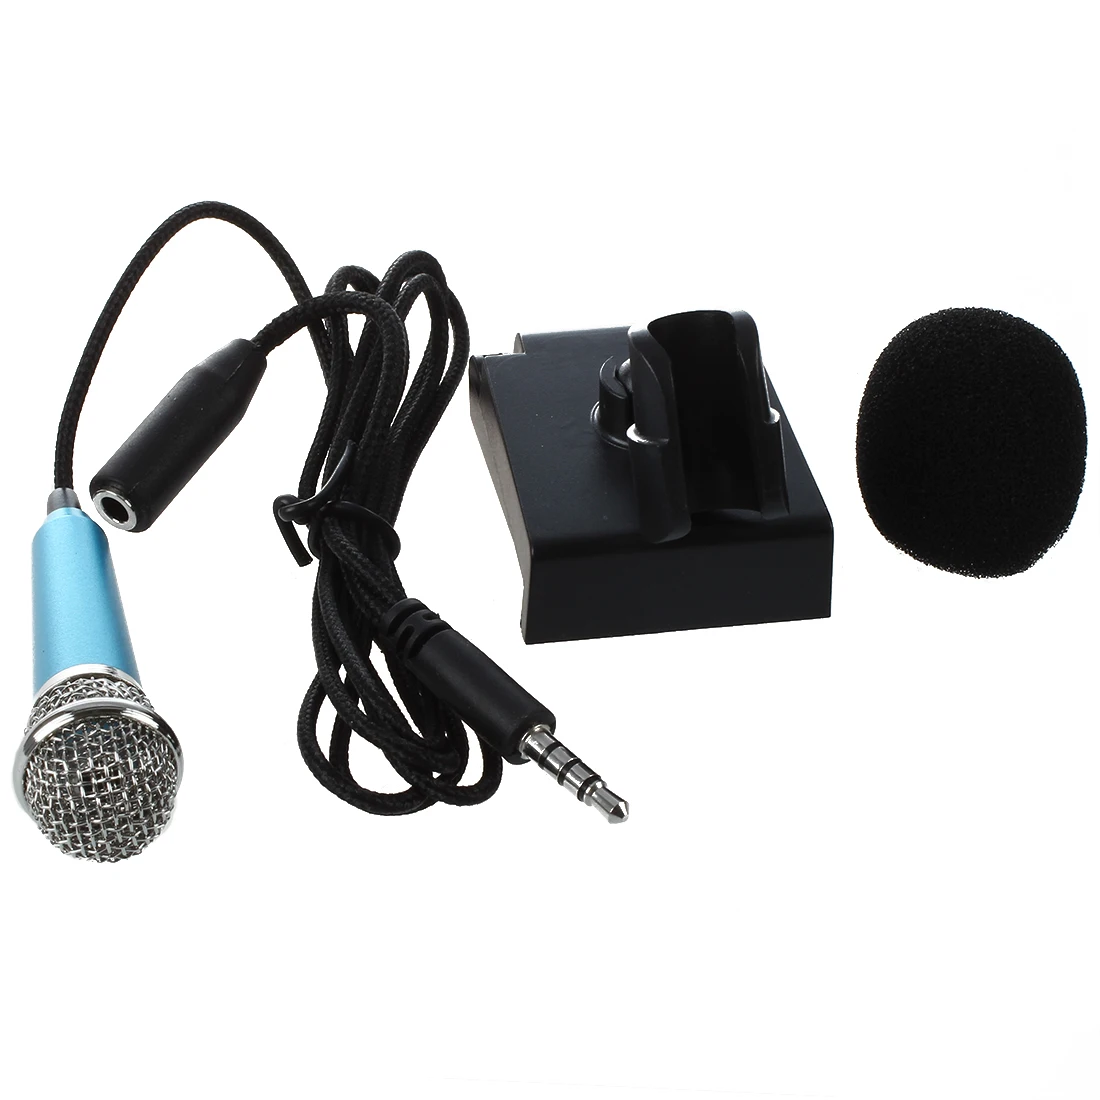 Mini ręczny mikrofon do nagrywania głosu, czat internetowy na smartfonie,  notebooku lub tablecie, z 3.5mm kabel do mikrofonu i stojak na mikrofon|Mikrofony|  - AliExpress